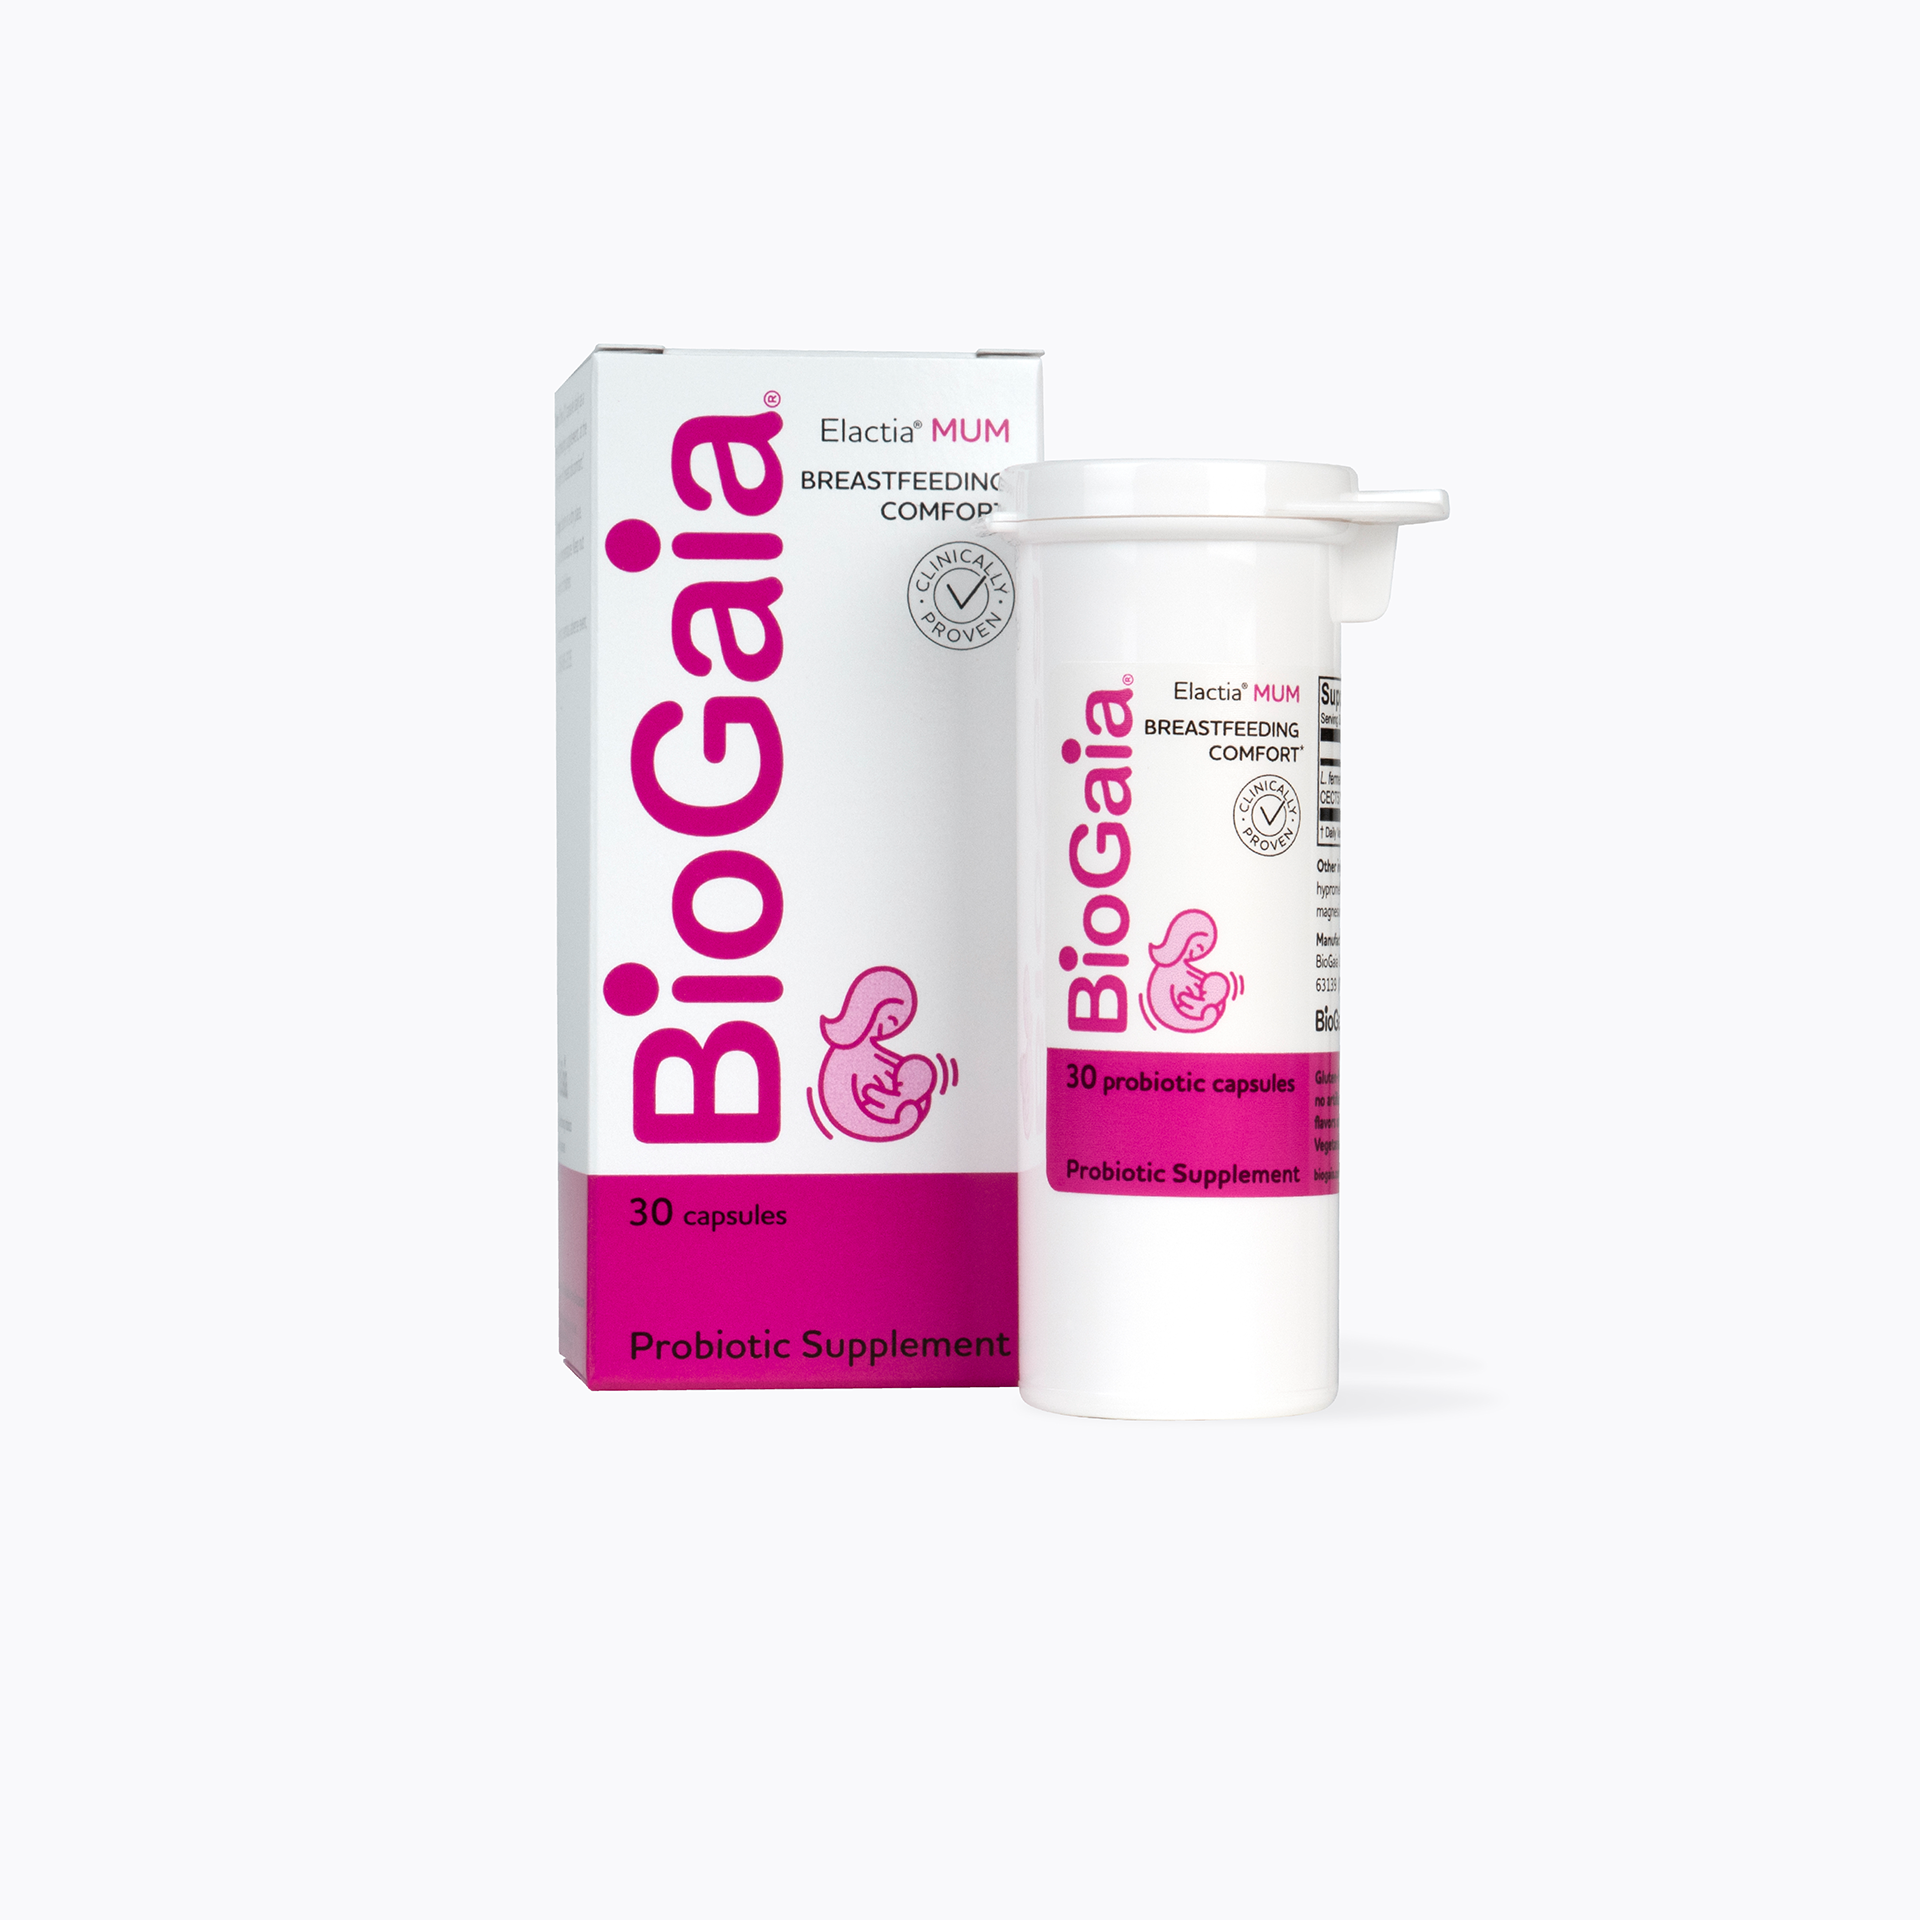 BioGaia Elactia MUM - Probiotic Capsules